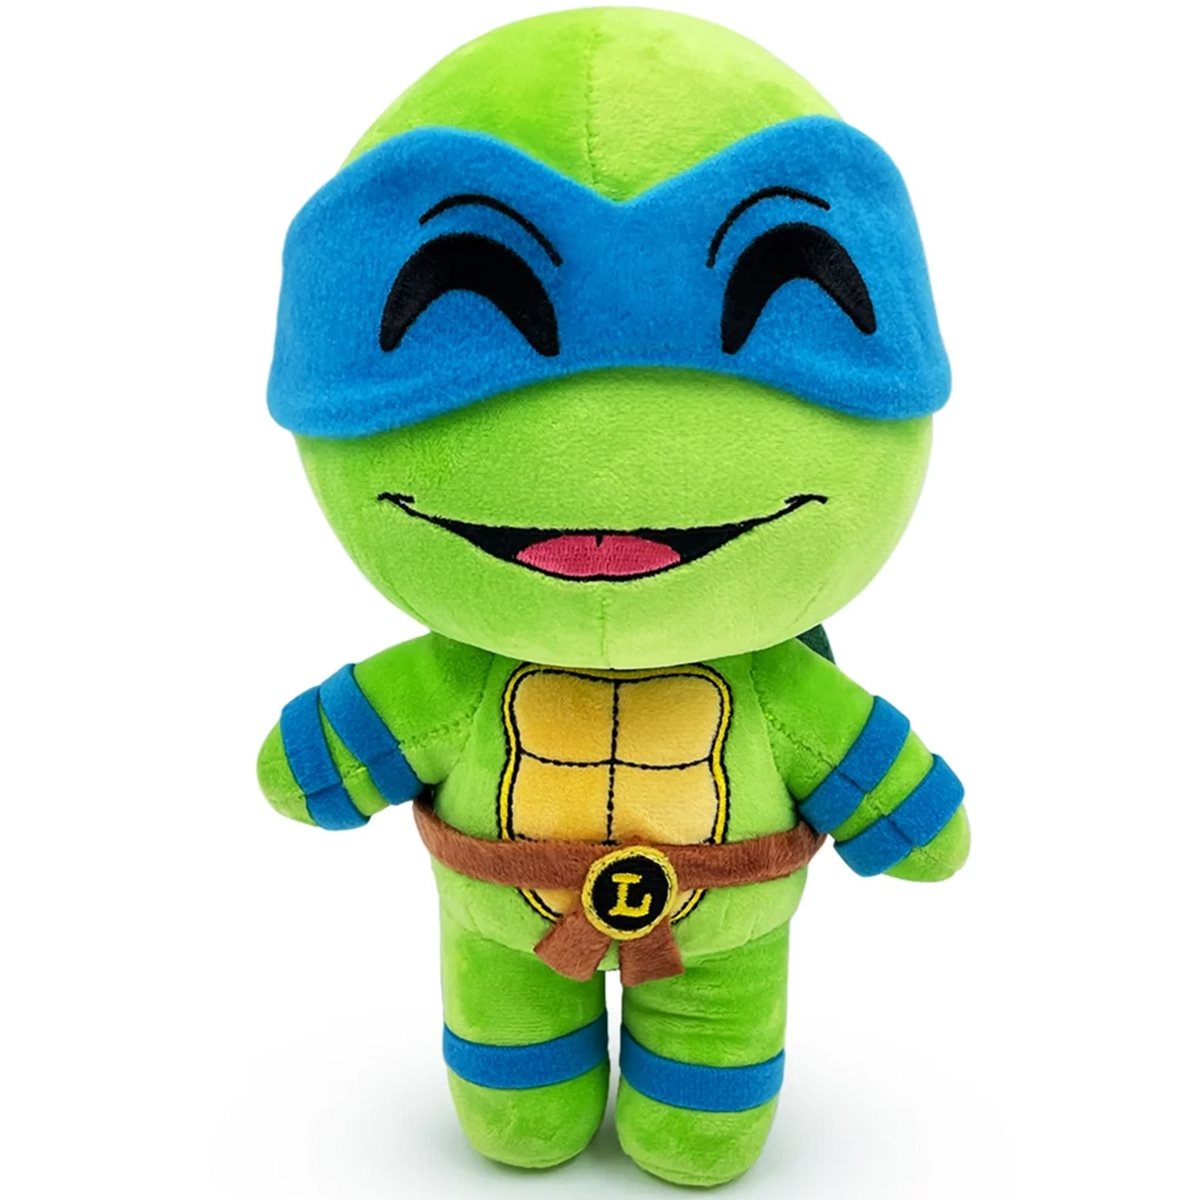 Youtooz: Teenage Mutant Ninja Turtles - Raphael 9” Plush